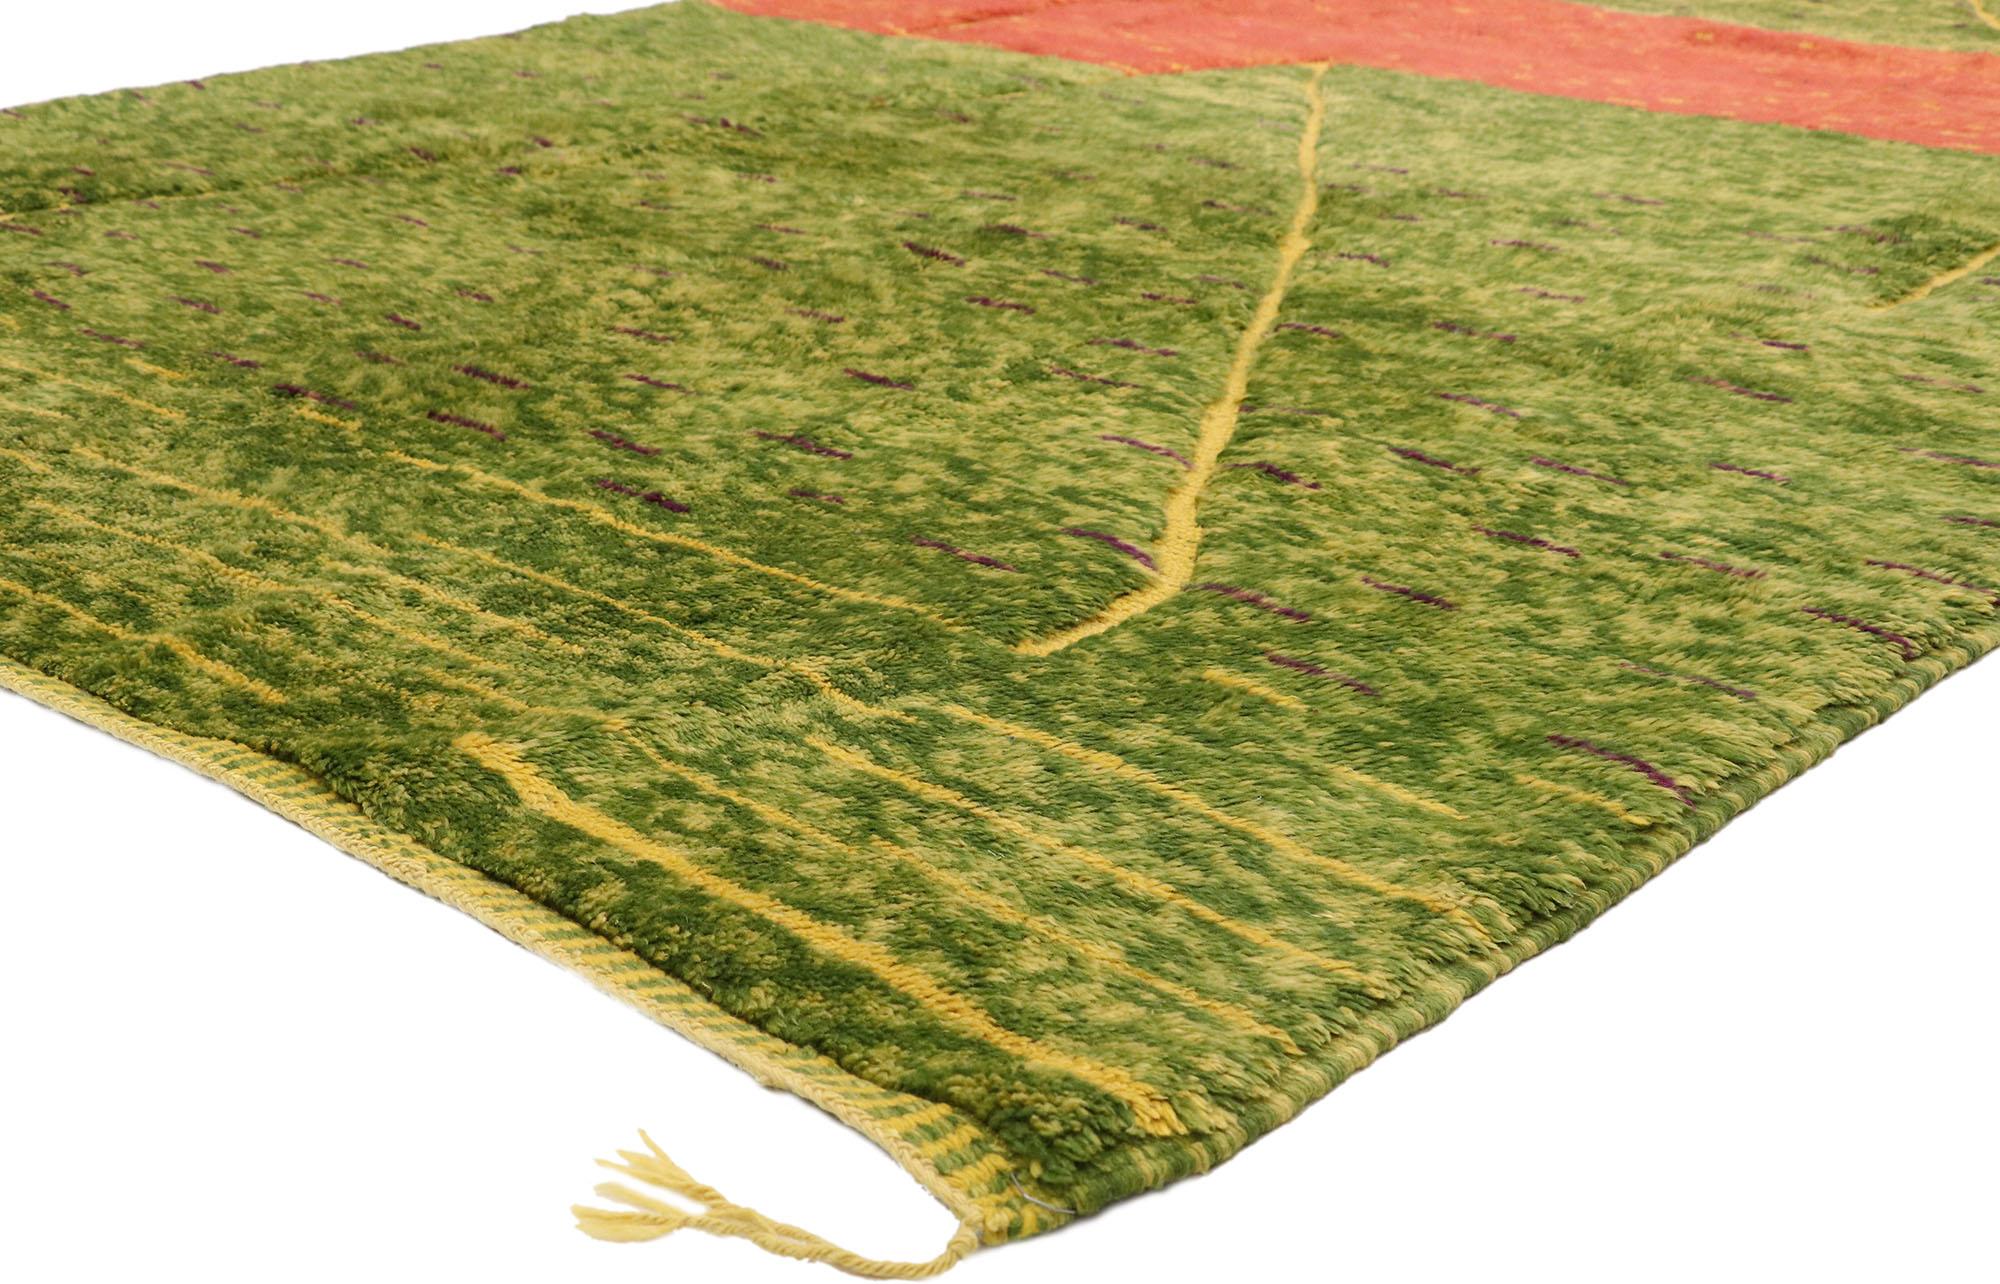 21037 Moderner grüner Beni Mrirt Marokkanischer Teppich, 06'11 x 10'06. Beni Mrirt-Teppiche verkörpern eine geschätzte marokkanische Webtradition, die für ihre luxuriöse Textur, geometrischen Muster und beruhigenden Erdtöne bekannt ist. Diese